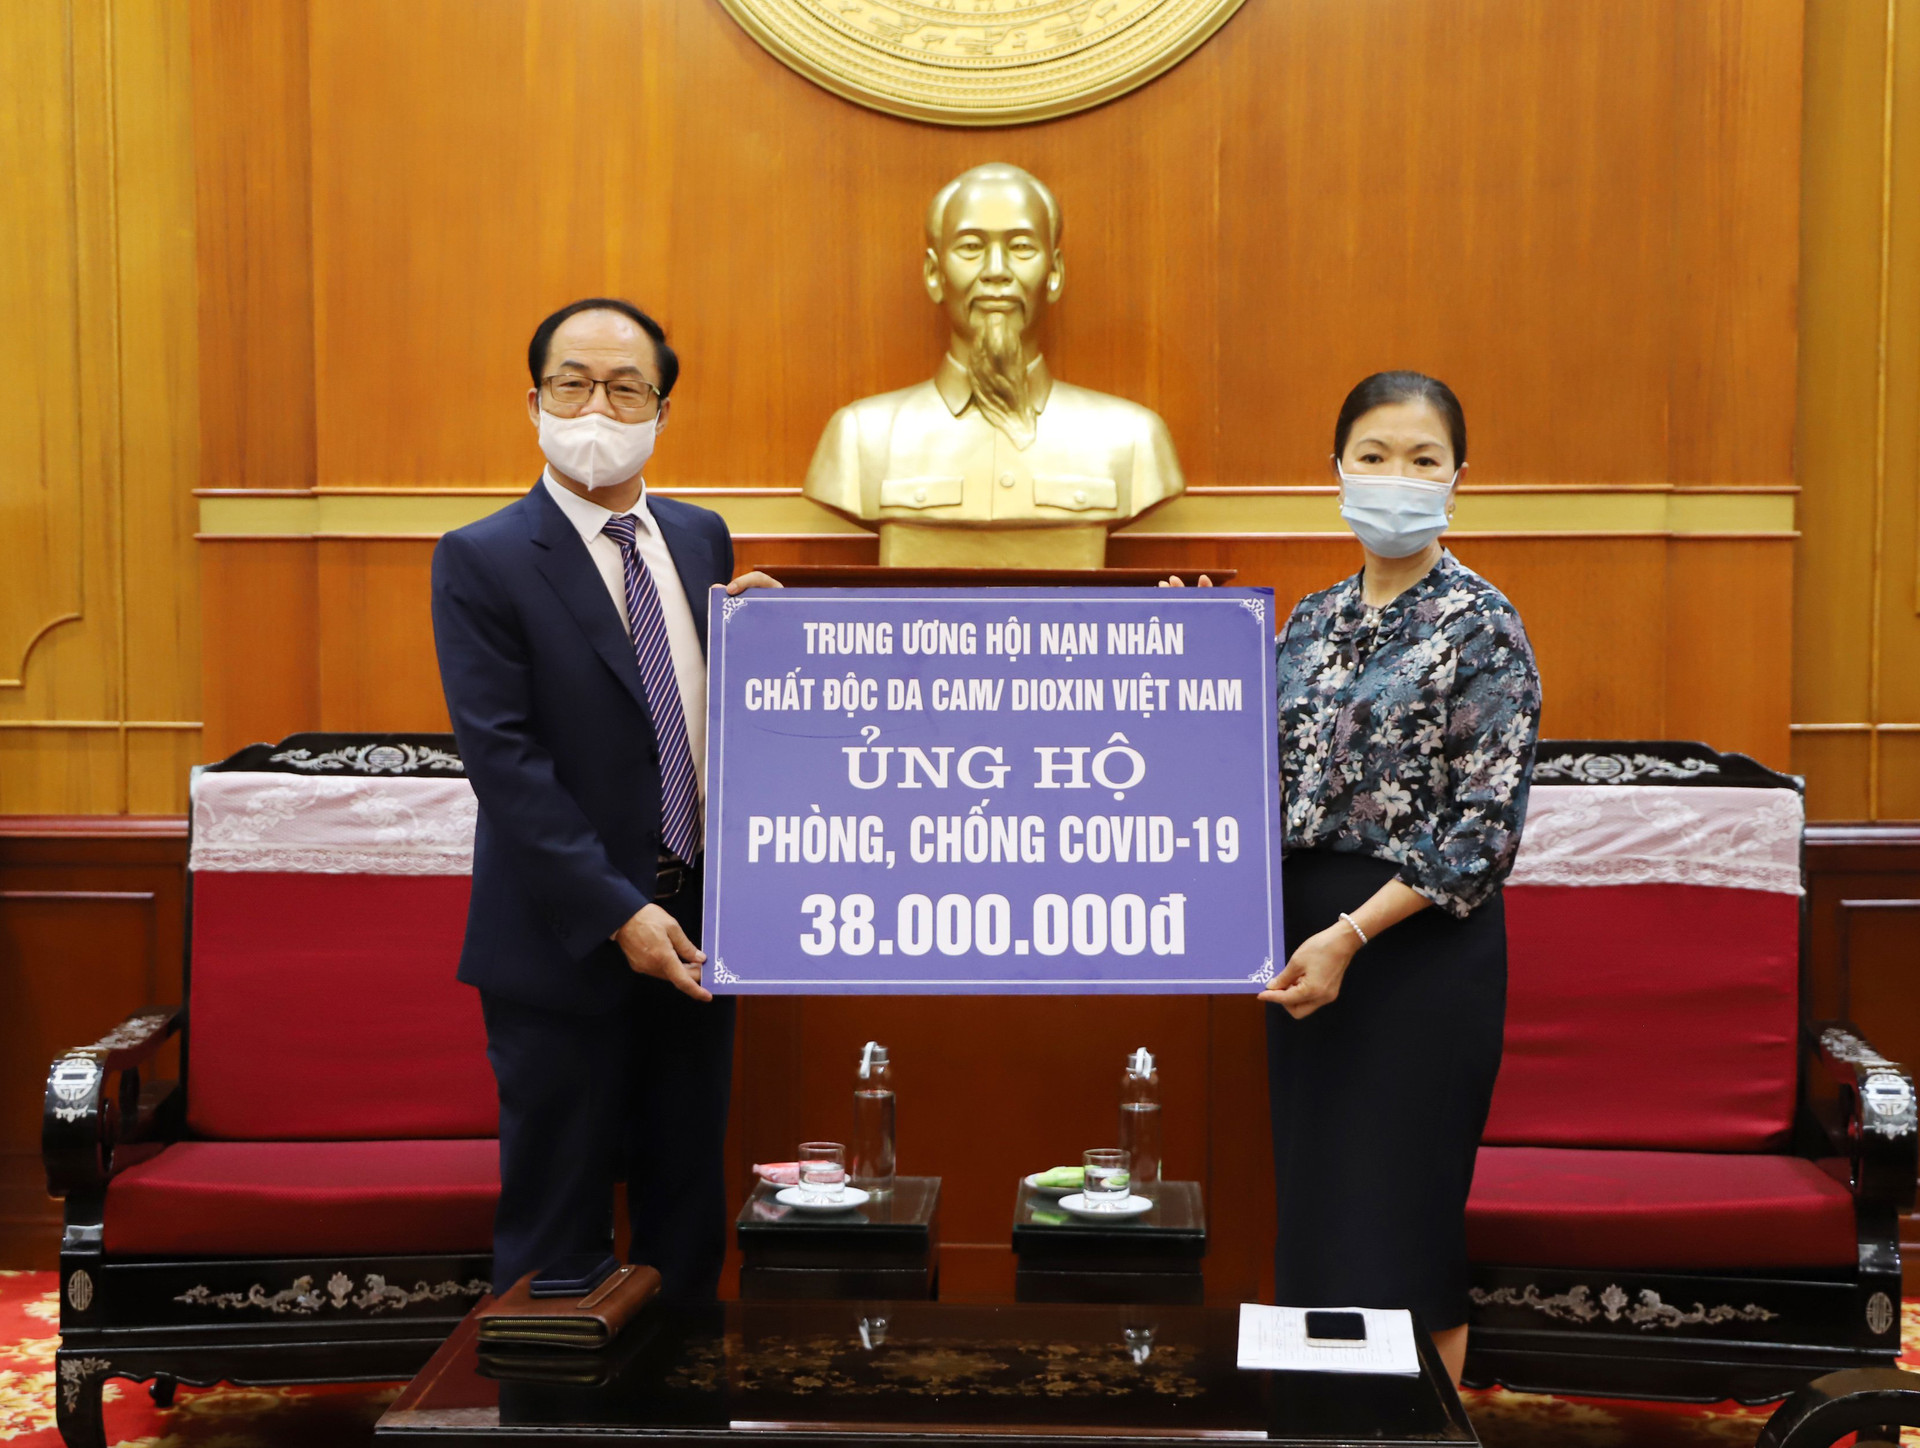 Phó Chủ tịch Trương Thị Ngọc Ánh tiếp nhận từ Trung ương Hội nạn nhân chất độc Da cam/Dioxin Việt Nam.